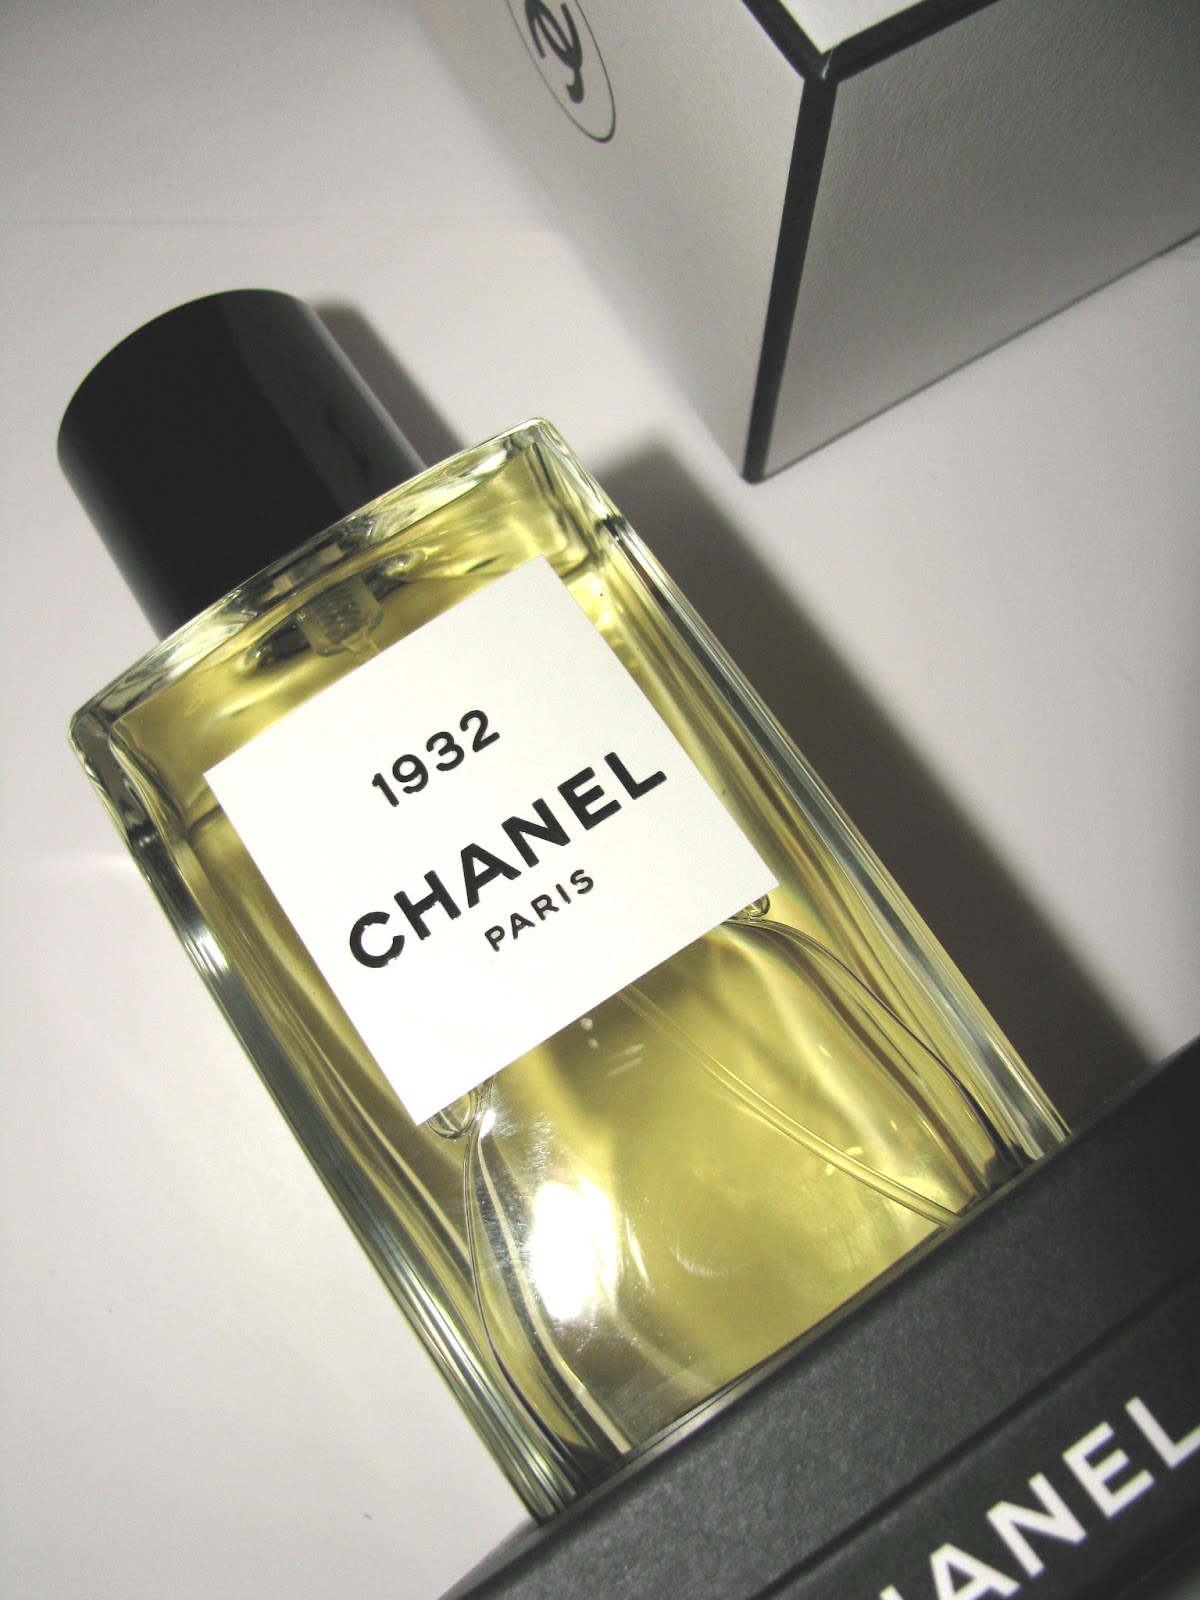 The Beauty Alchemist: Les Exclusifs de Chanel 1932- Fragrance